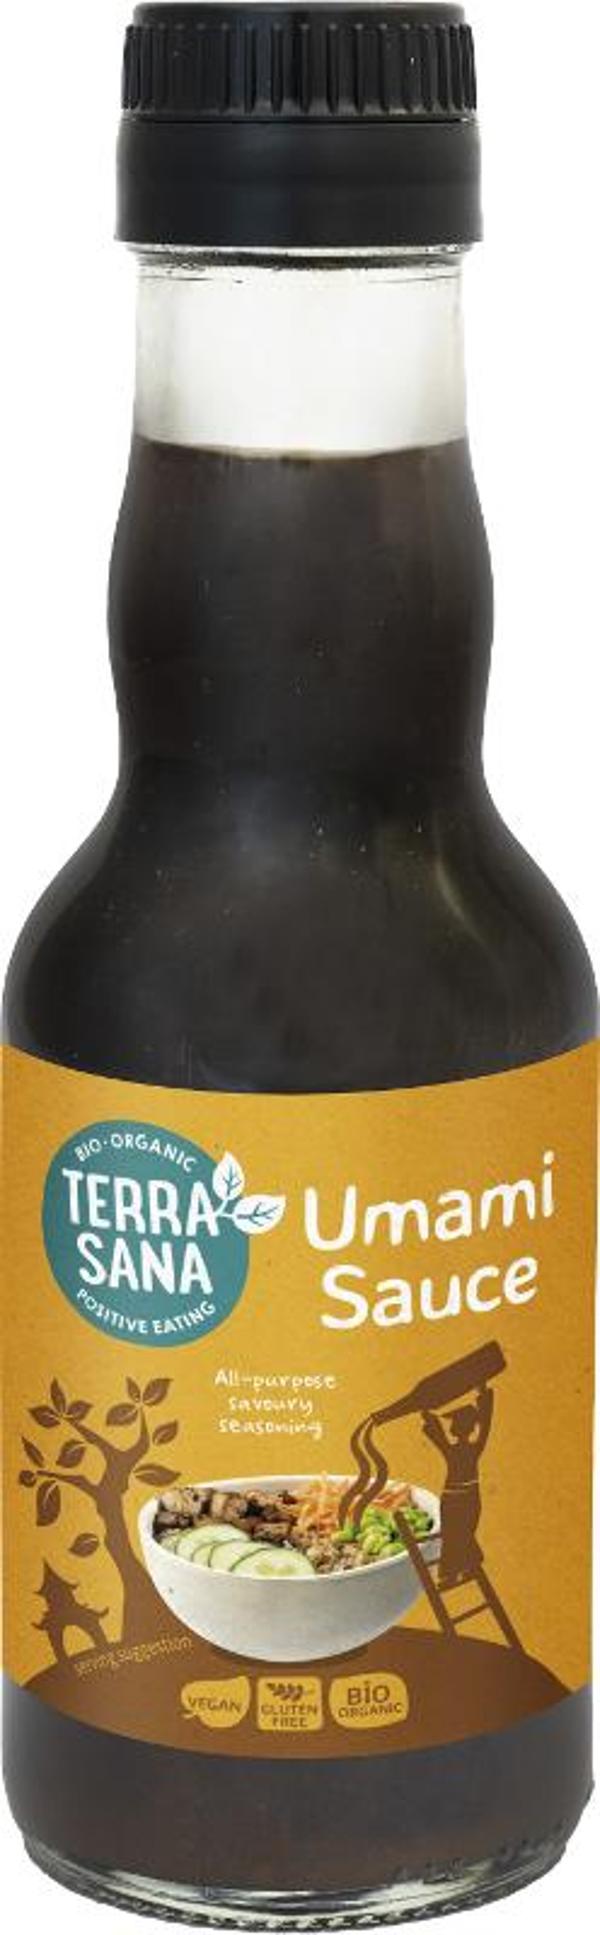 Produktfoto zu Umami Sauce 145ml Terra Sana